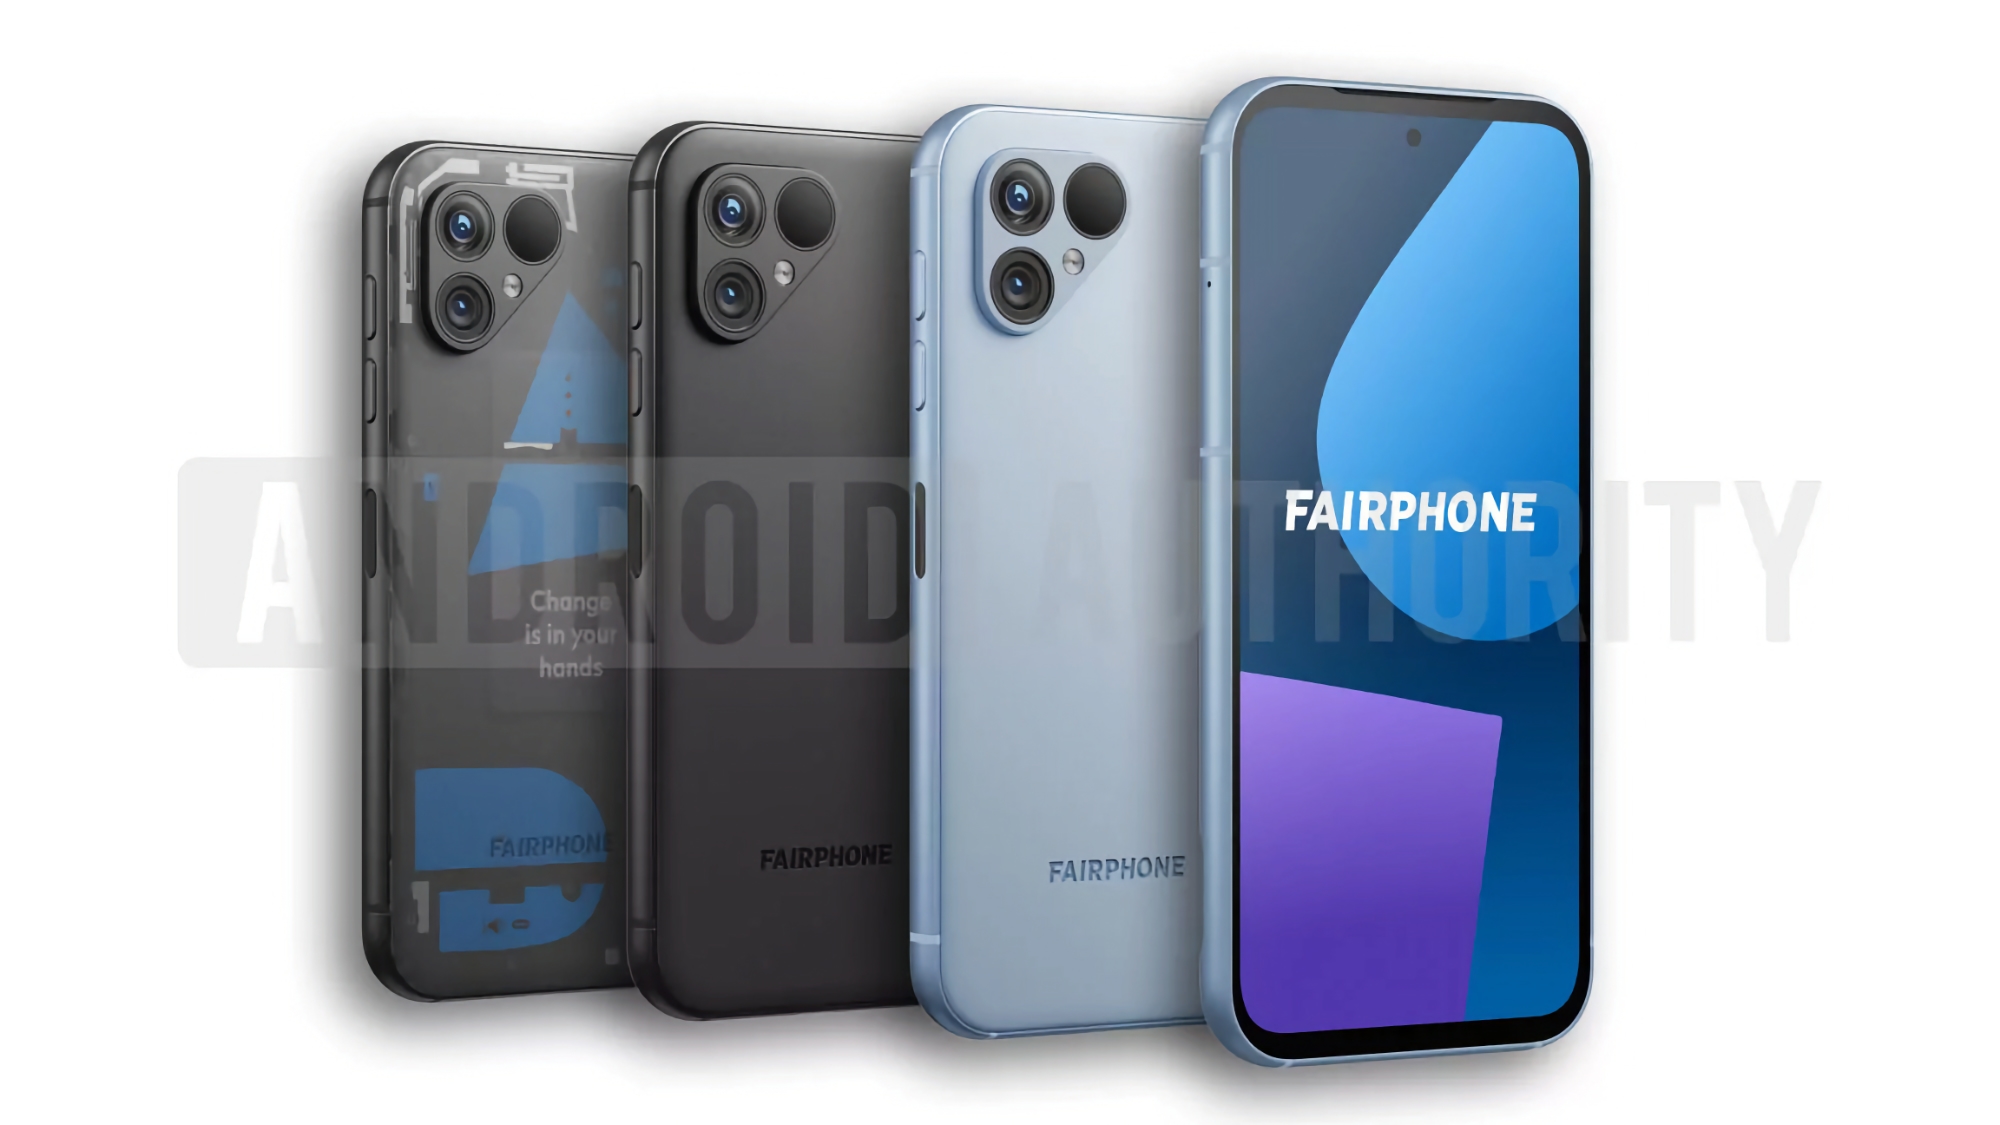 Voici à quoi ressemblera le Fairphone 5 : un smartphone avec prise en charge de cinq ans, un double appareil photo et trois couleurs.